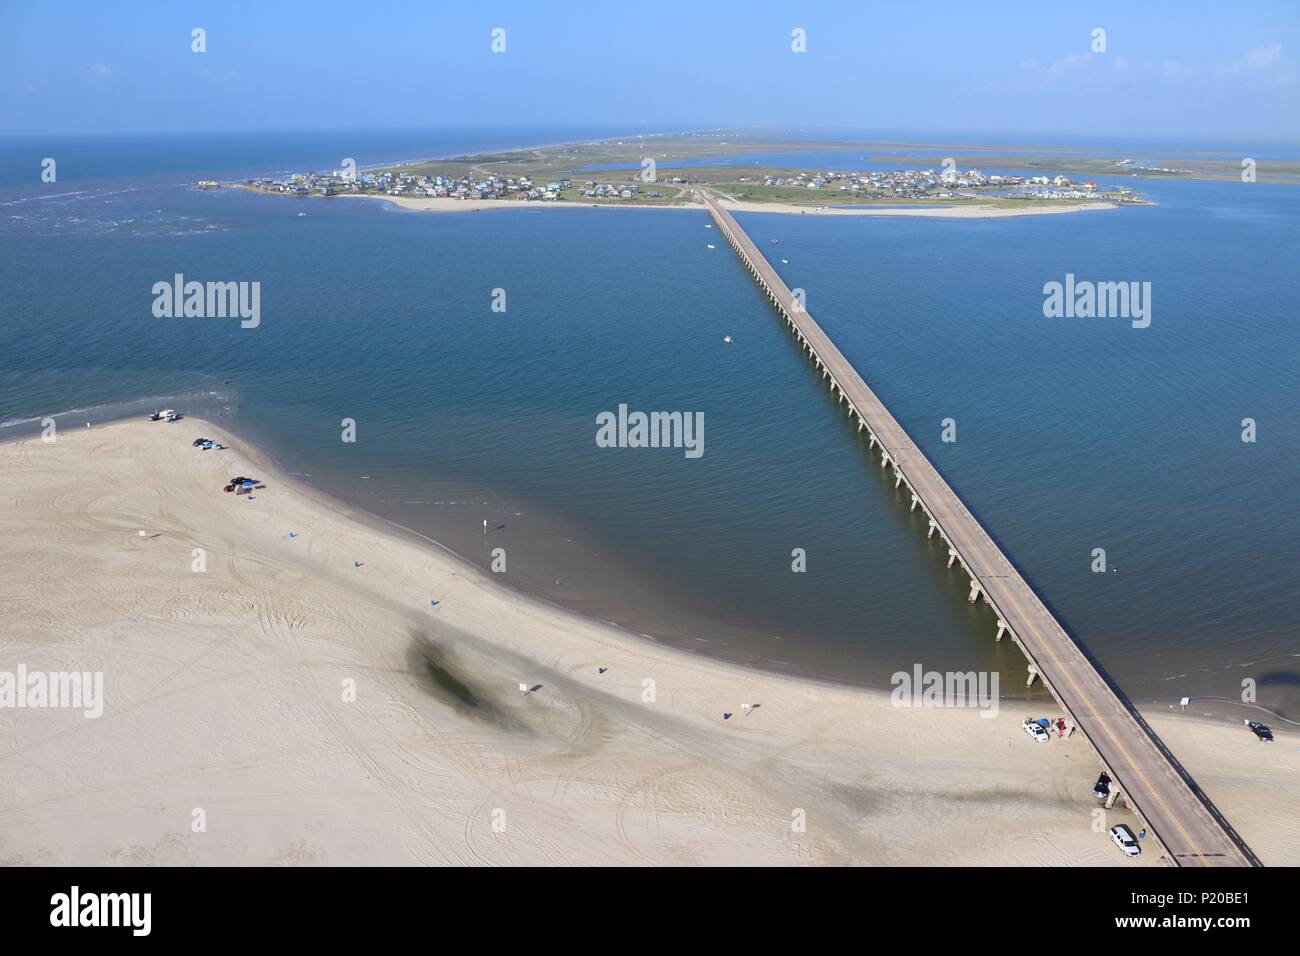 Vue aérienne de la côte du golfe du Texas, Galveston Island en direction de San Luis, États-Unis d'Amérique. Banque D'Images